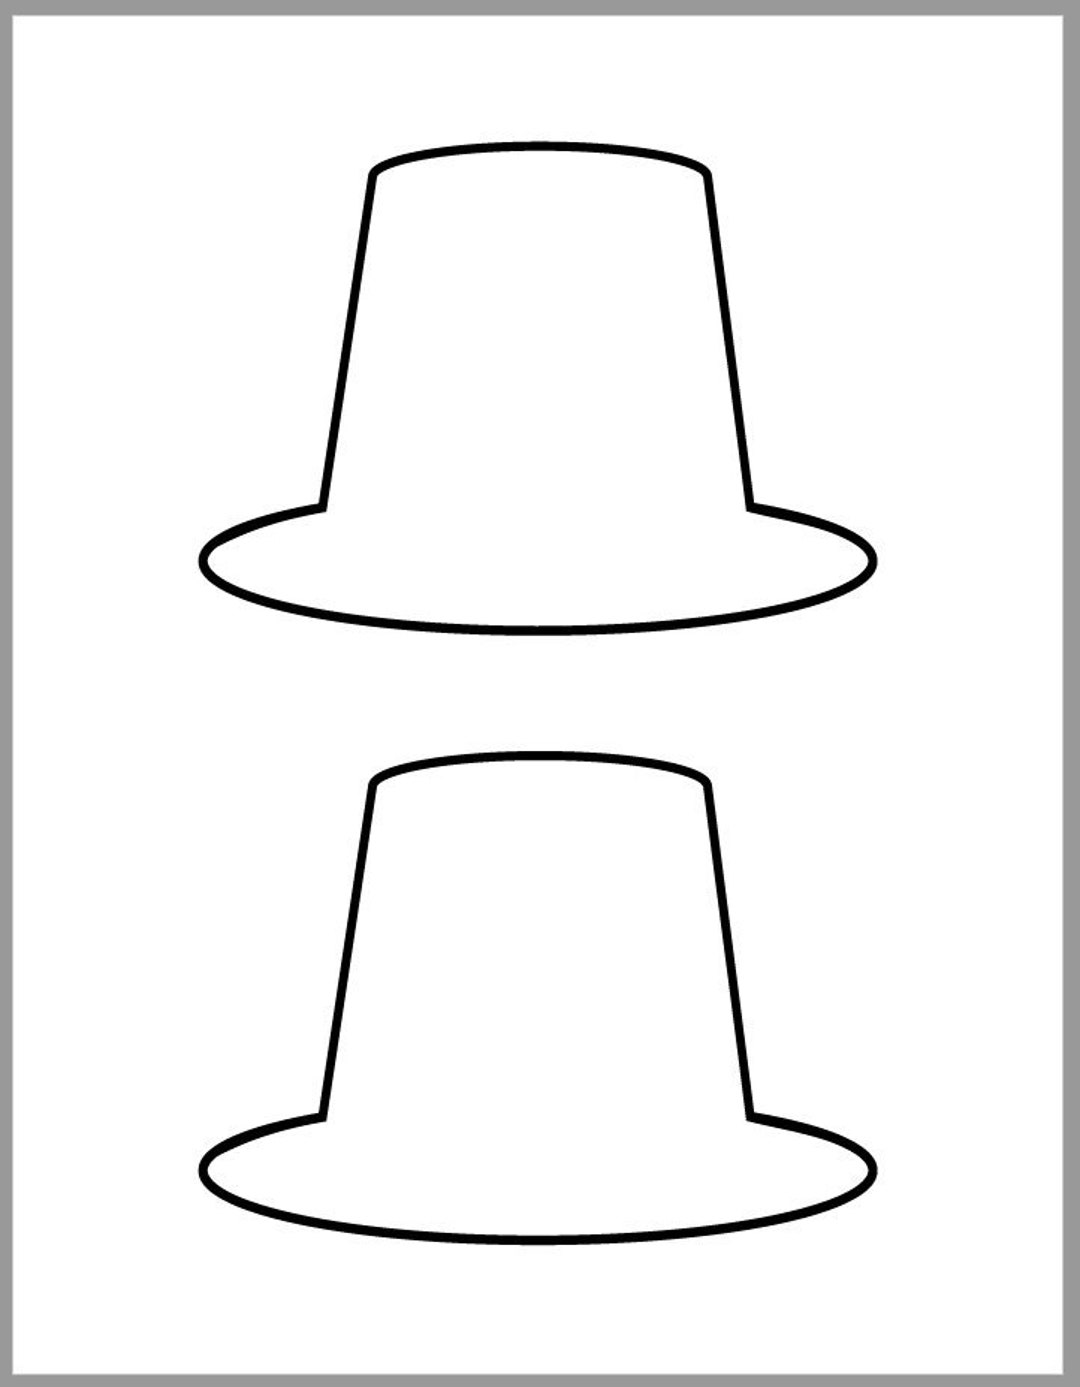 Inch pilgrim hat template